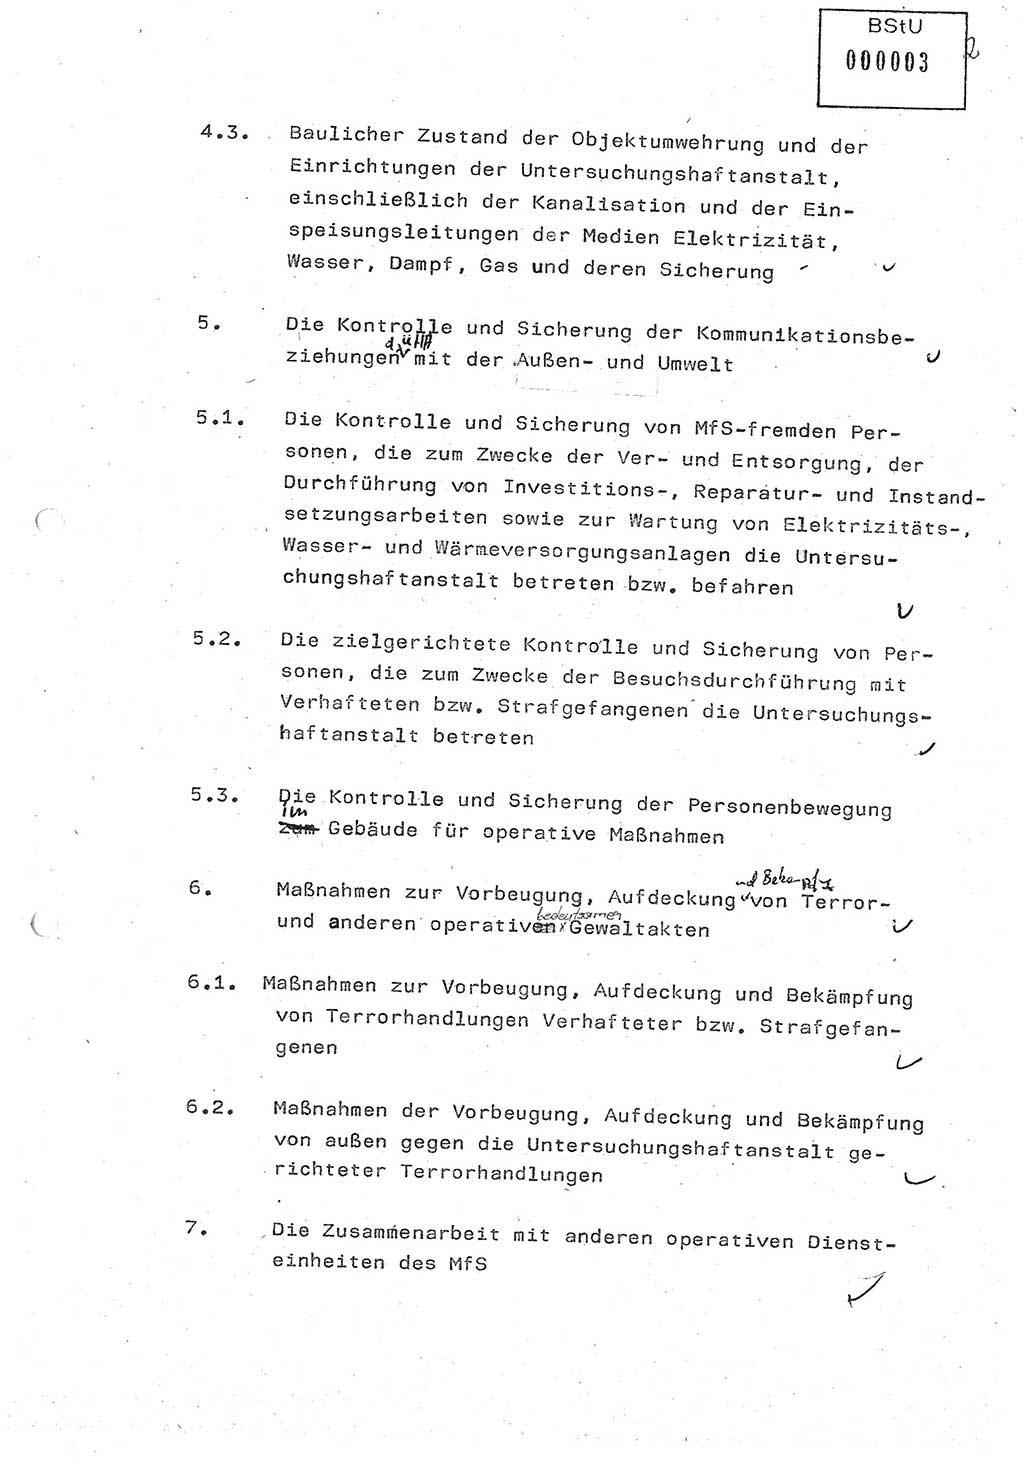 Diplomarbeit (Entwurf) Oberleutnant Peter Parke (Abt. ⅩⅣ), Ministerium für Staatssicherheit (MfS) [Deutsche Demokratische Republik (DDR)], Juristische Hochschule (JHS), Geheime Verschlußsache (GVS) o001-98/86, Potsdam 1986, Seite 3 (Dipl.-Arb. MfS DDR JHS GVS o001-98/86 1986, S. 3)